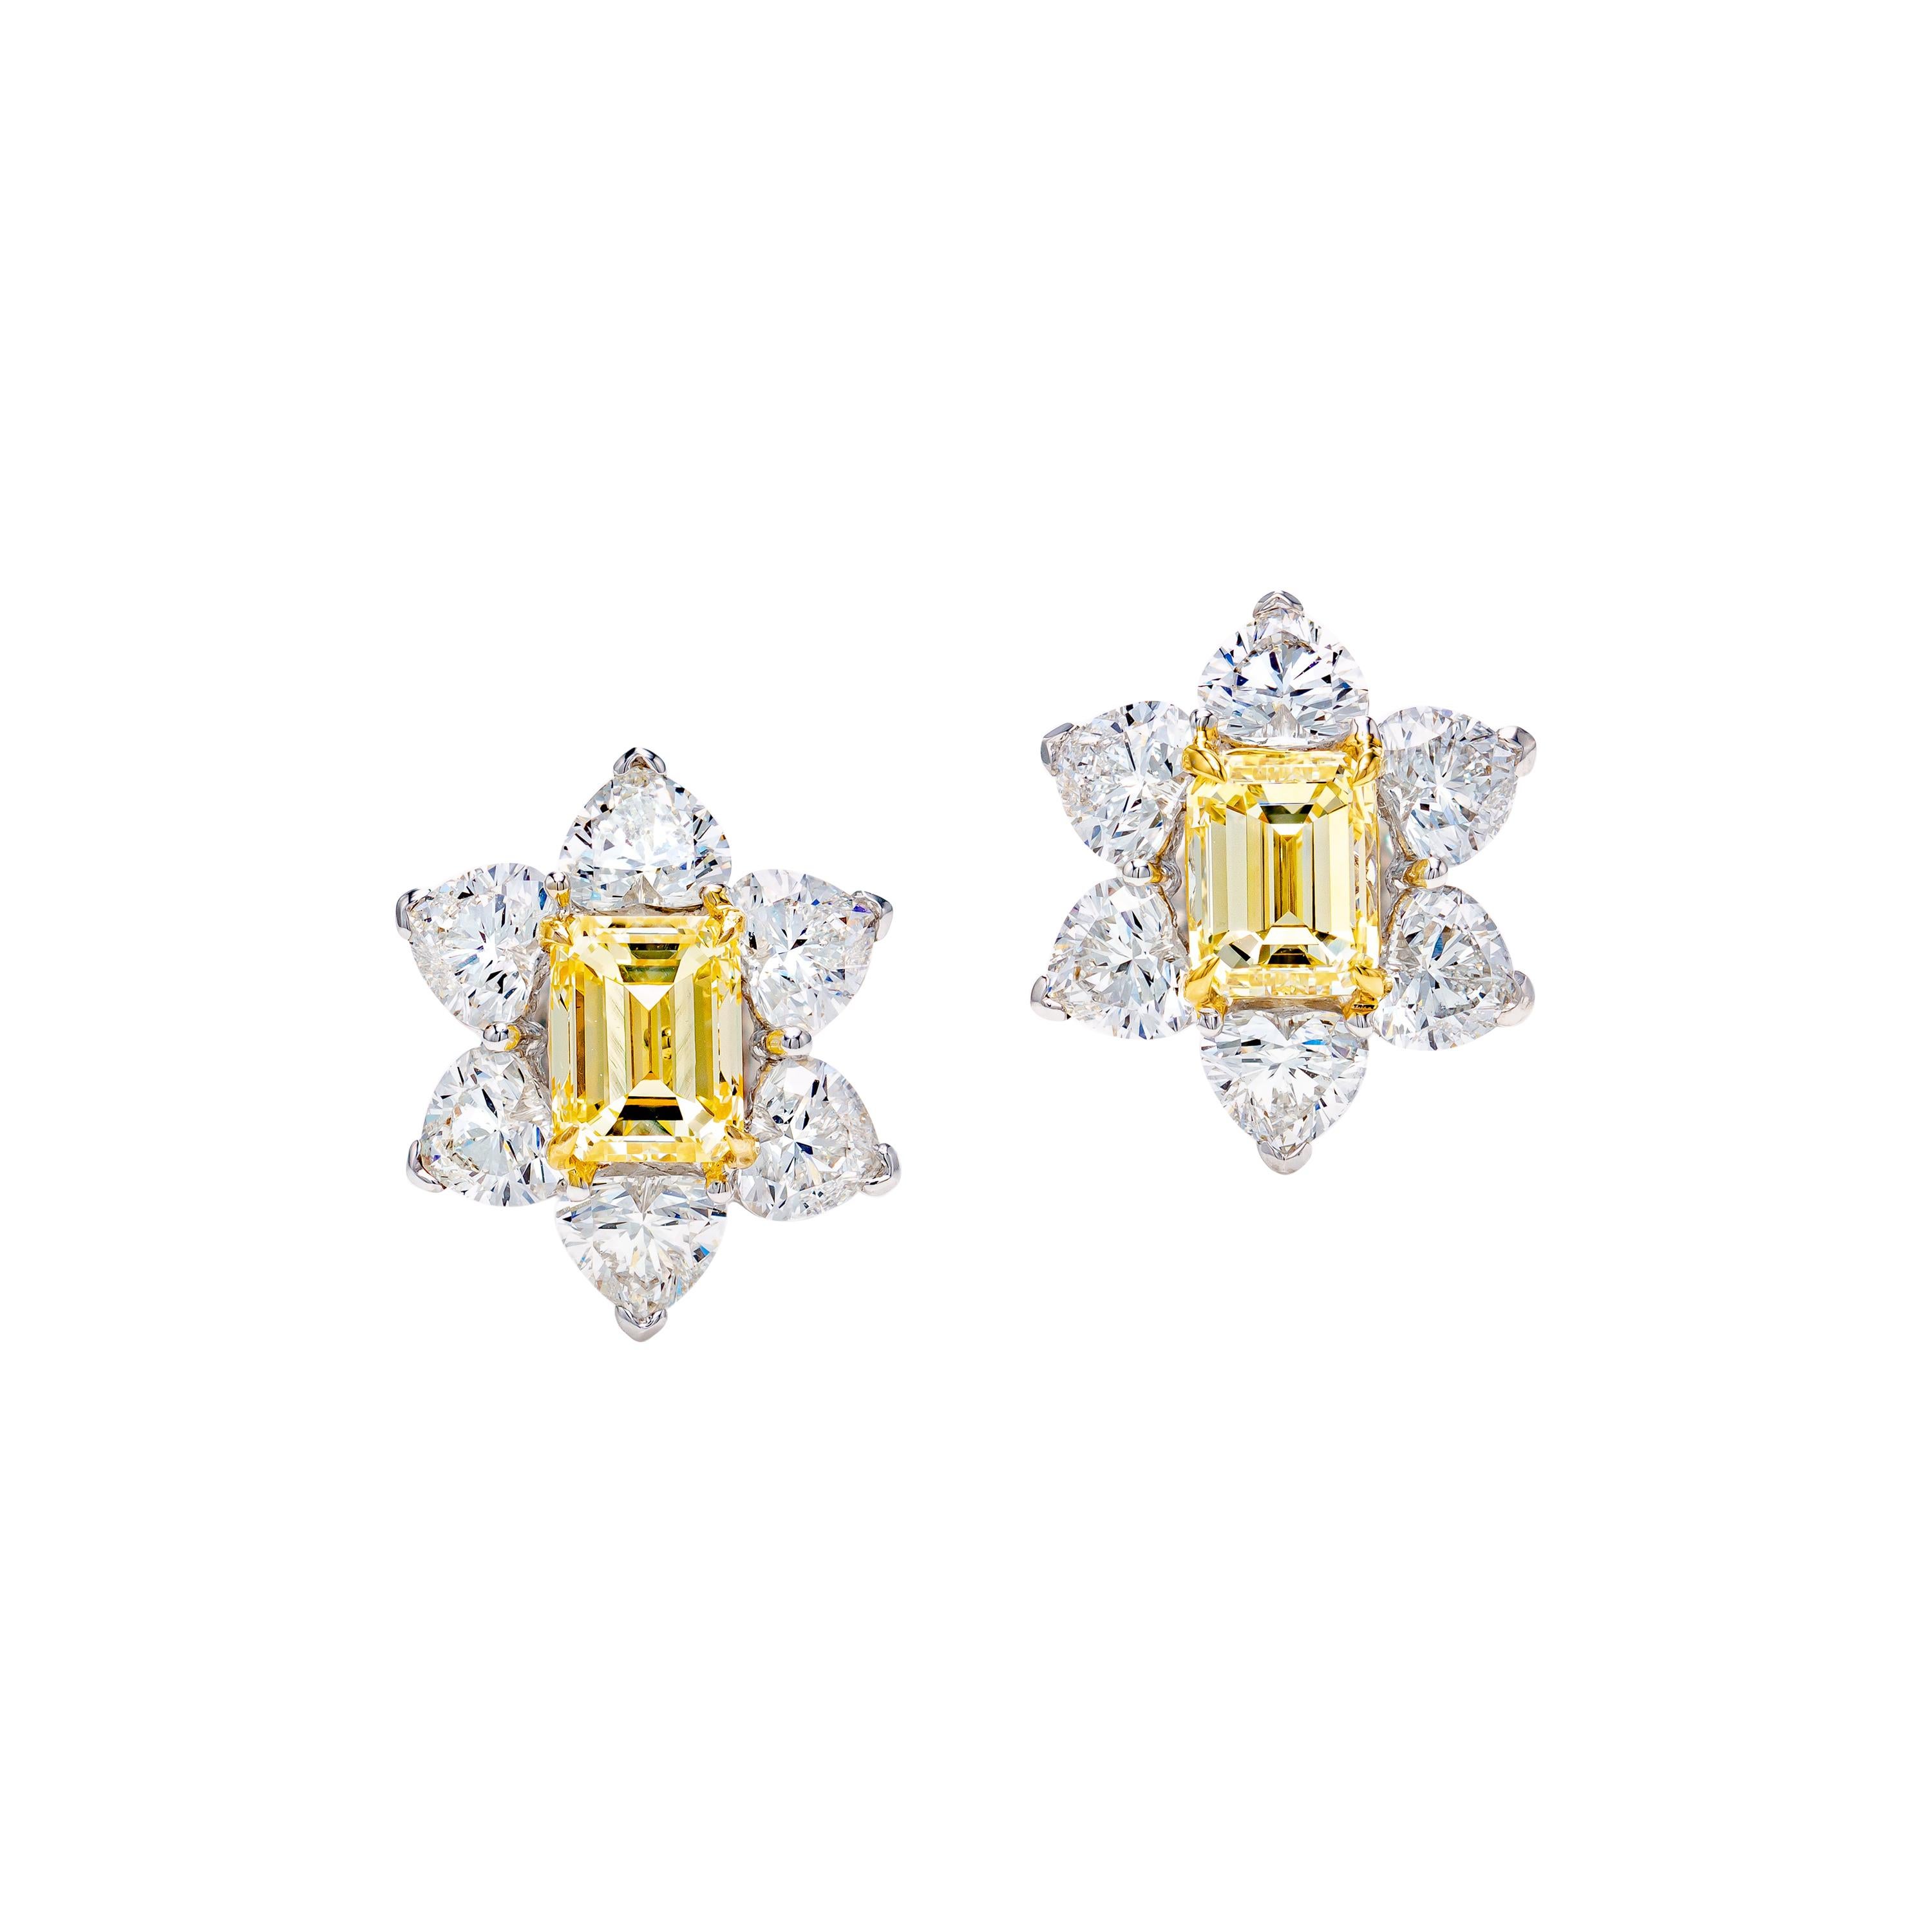 GIA Certified 4.9 Carat Fancy Light Yellow Floral Diamond Earrings in 18K Gold